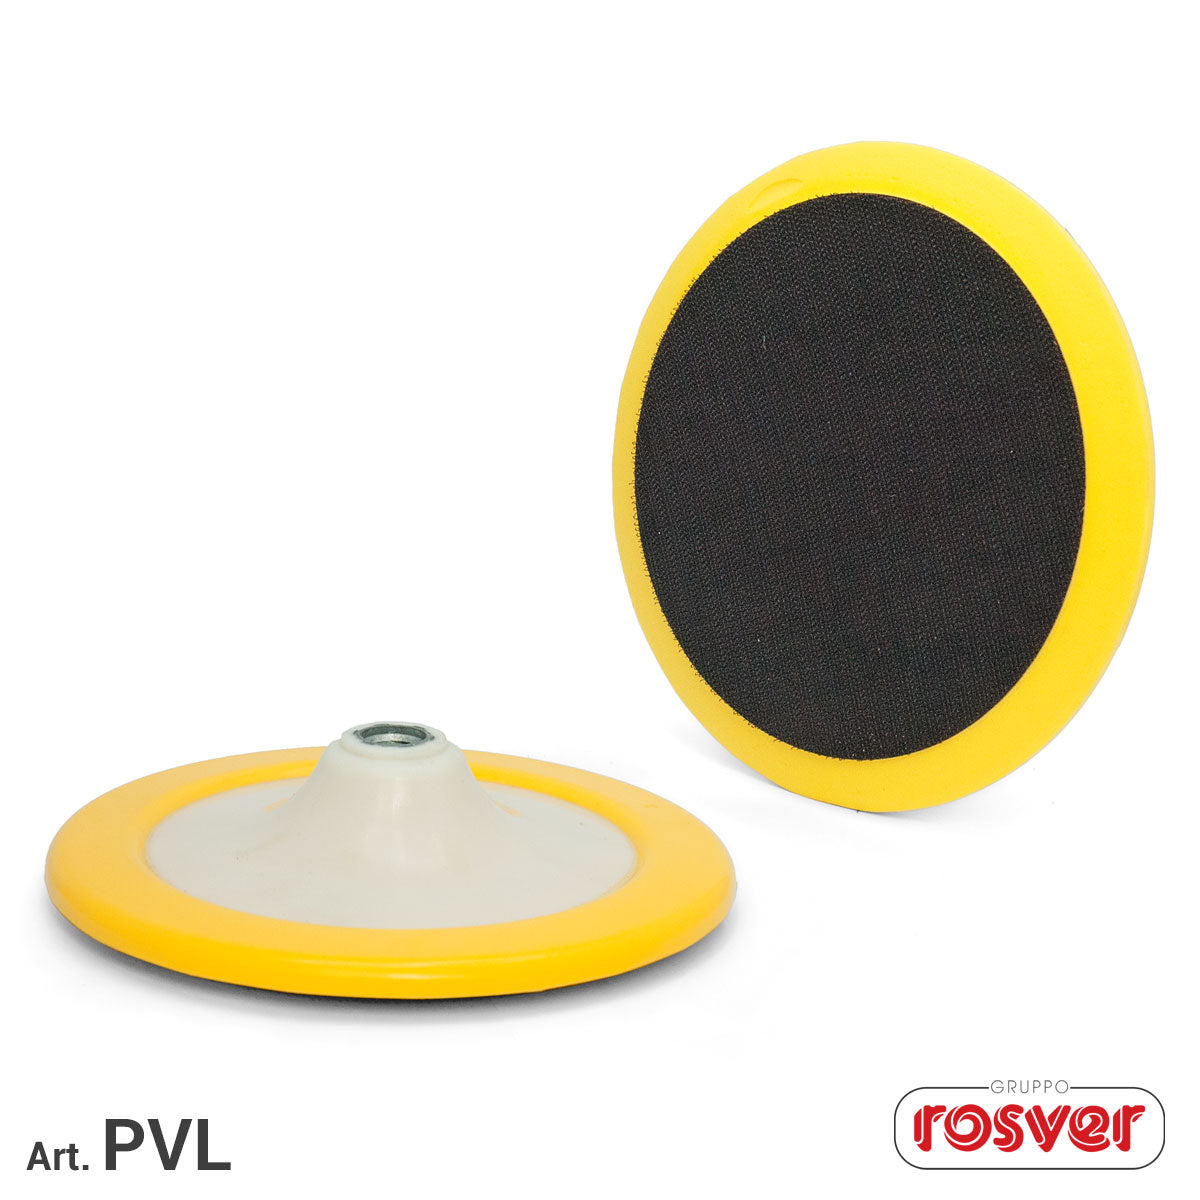 Platorello per dischi in lana PVL 175 M14 Rosver - Conf.1pz